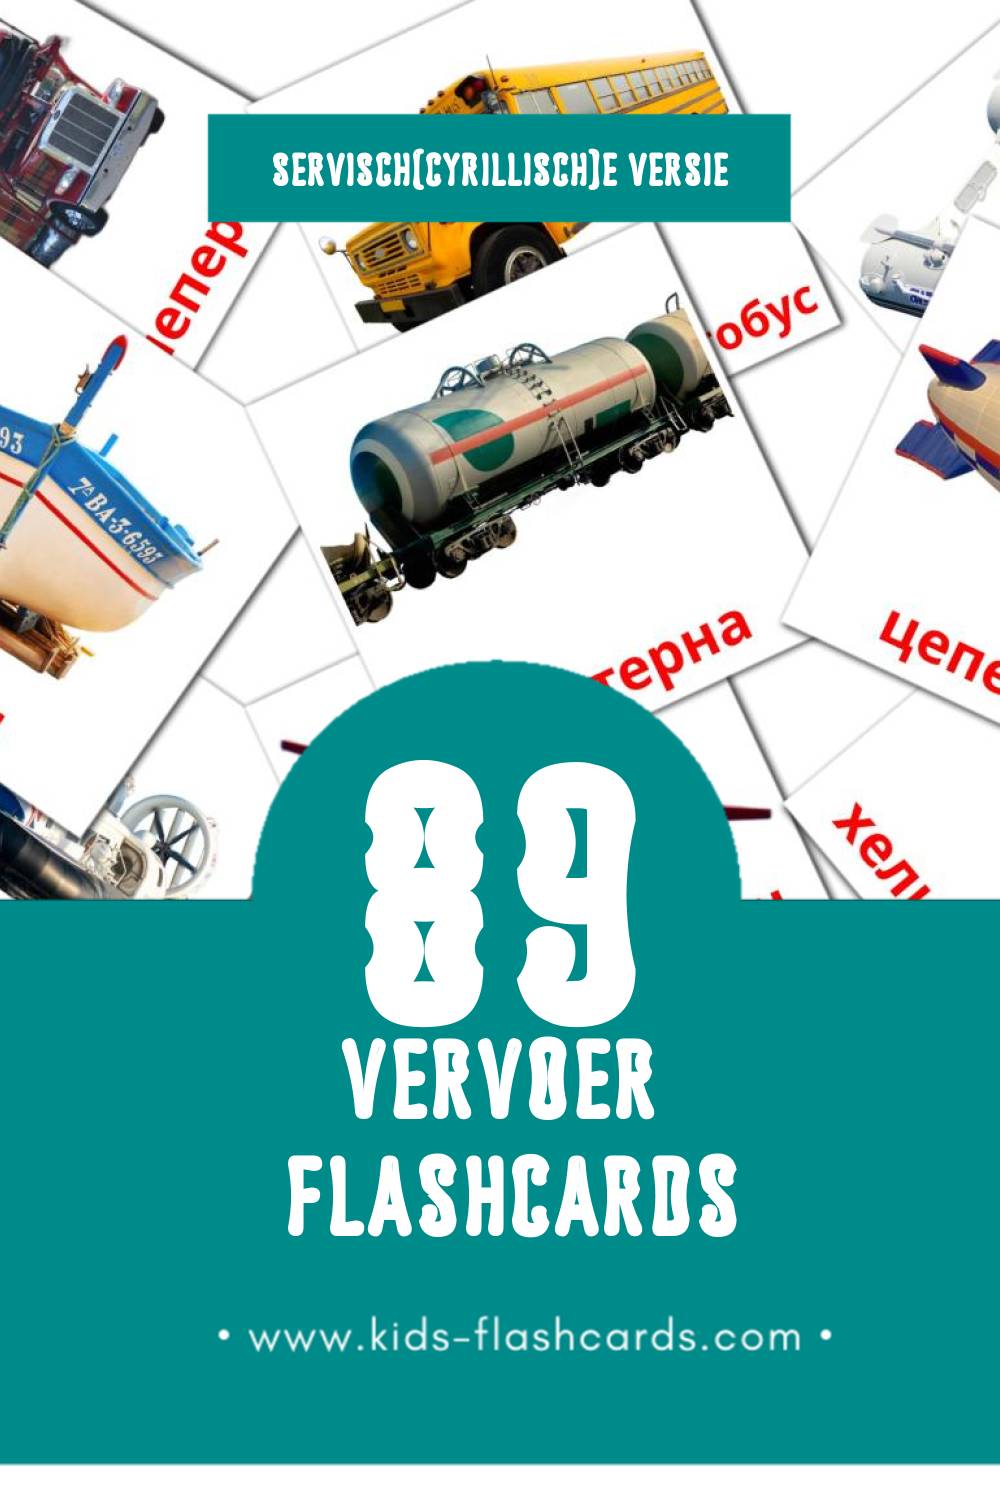 Visuele Саобраћај Flashcards voor Kleuters (89 kaarten in het Servisch(cyrillisch))